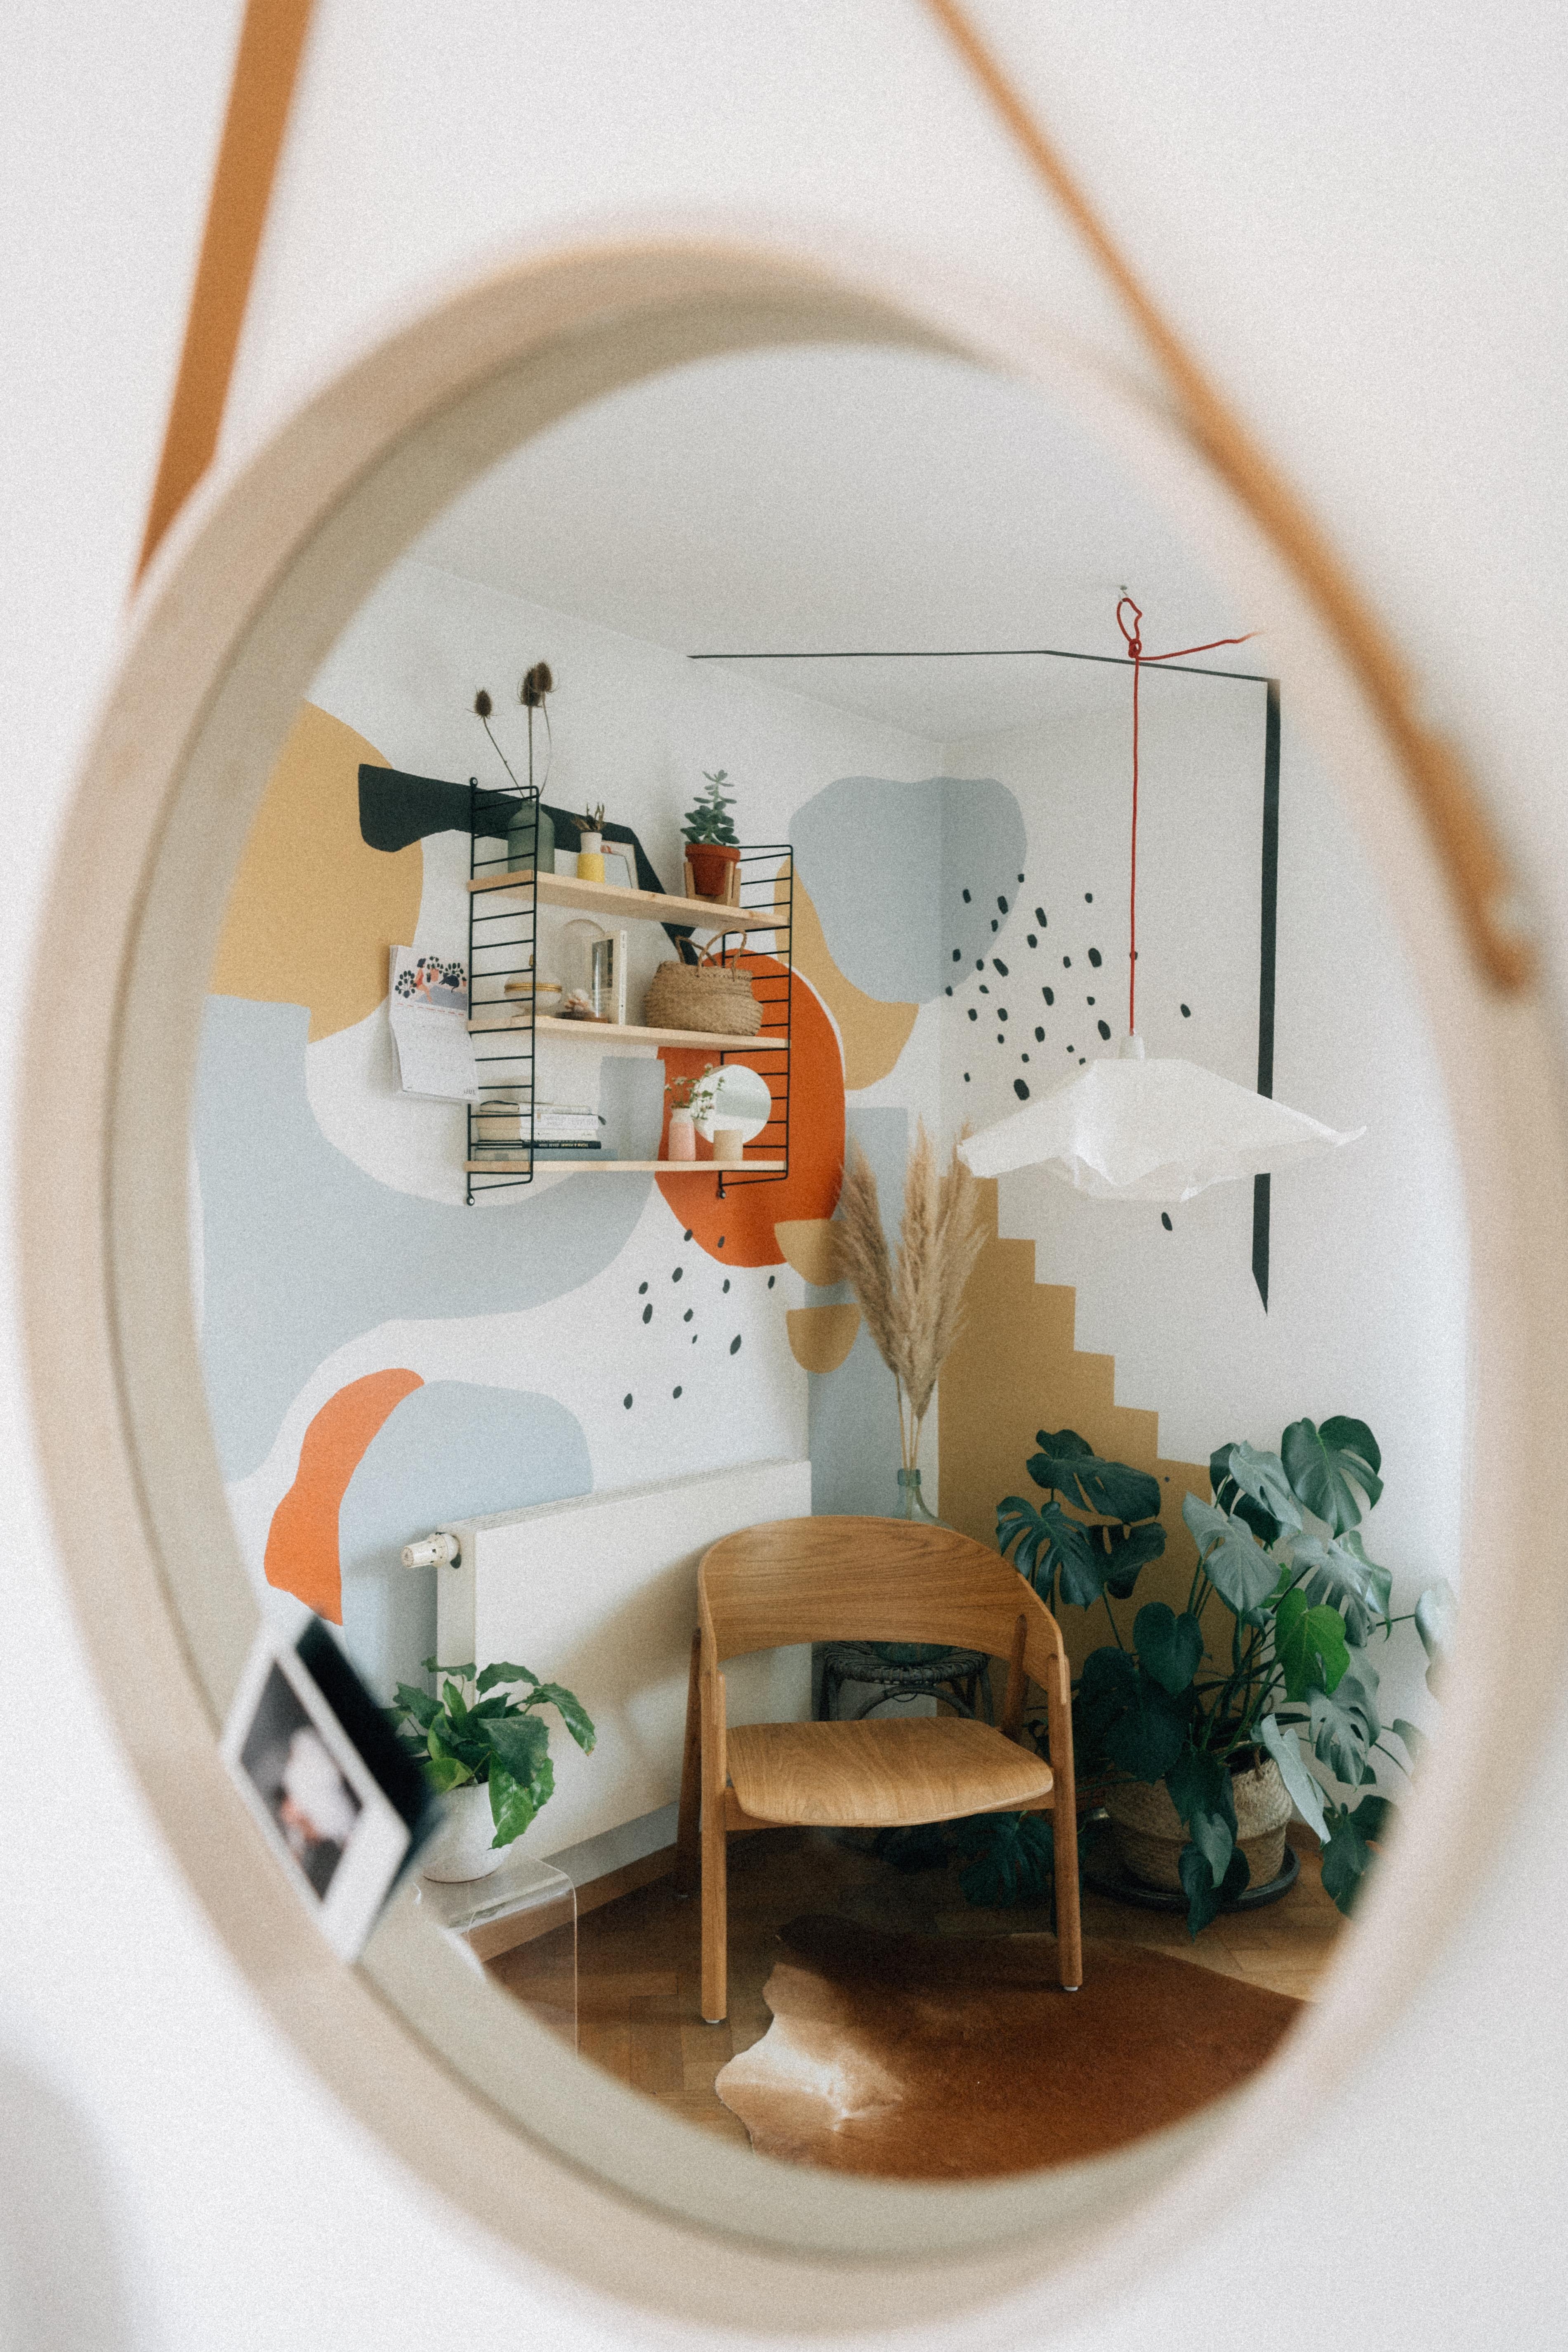 Spieglein, Spiegeln an der Wand....😉
#wandgestaltung #wohnzimmer #buntistimmerbesser